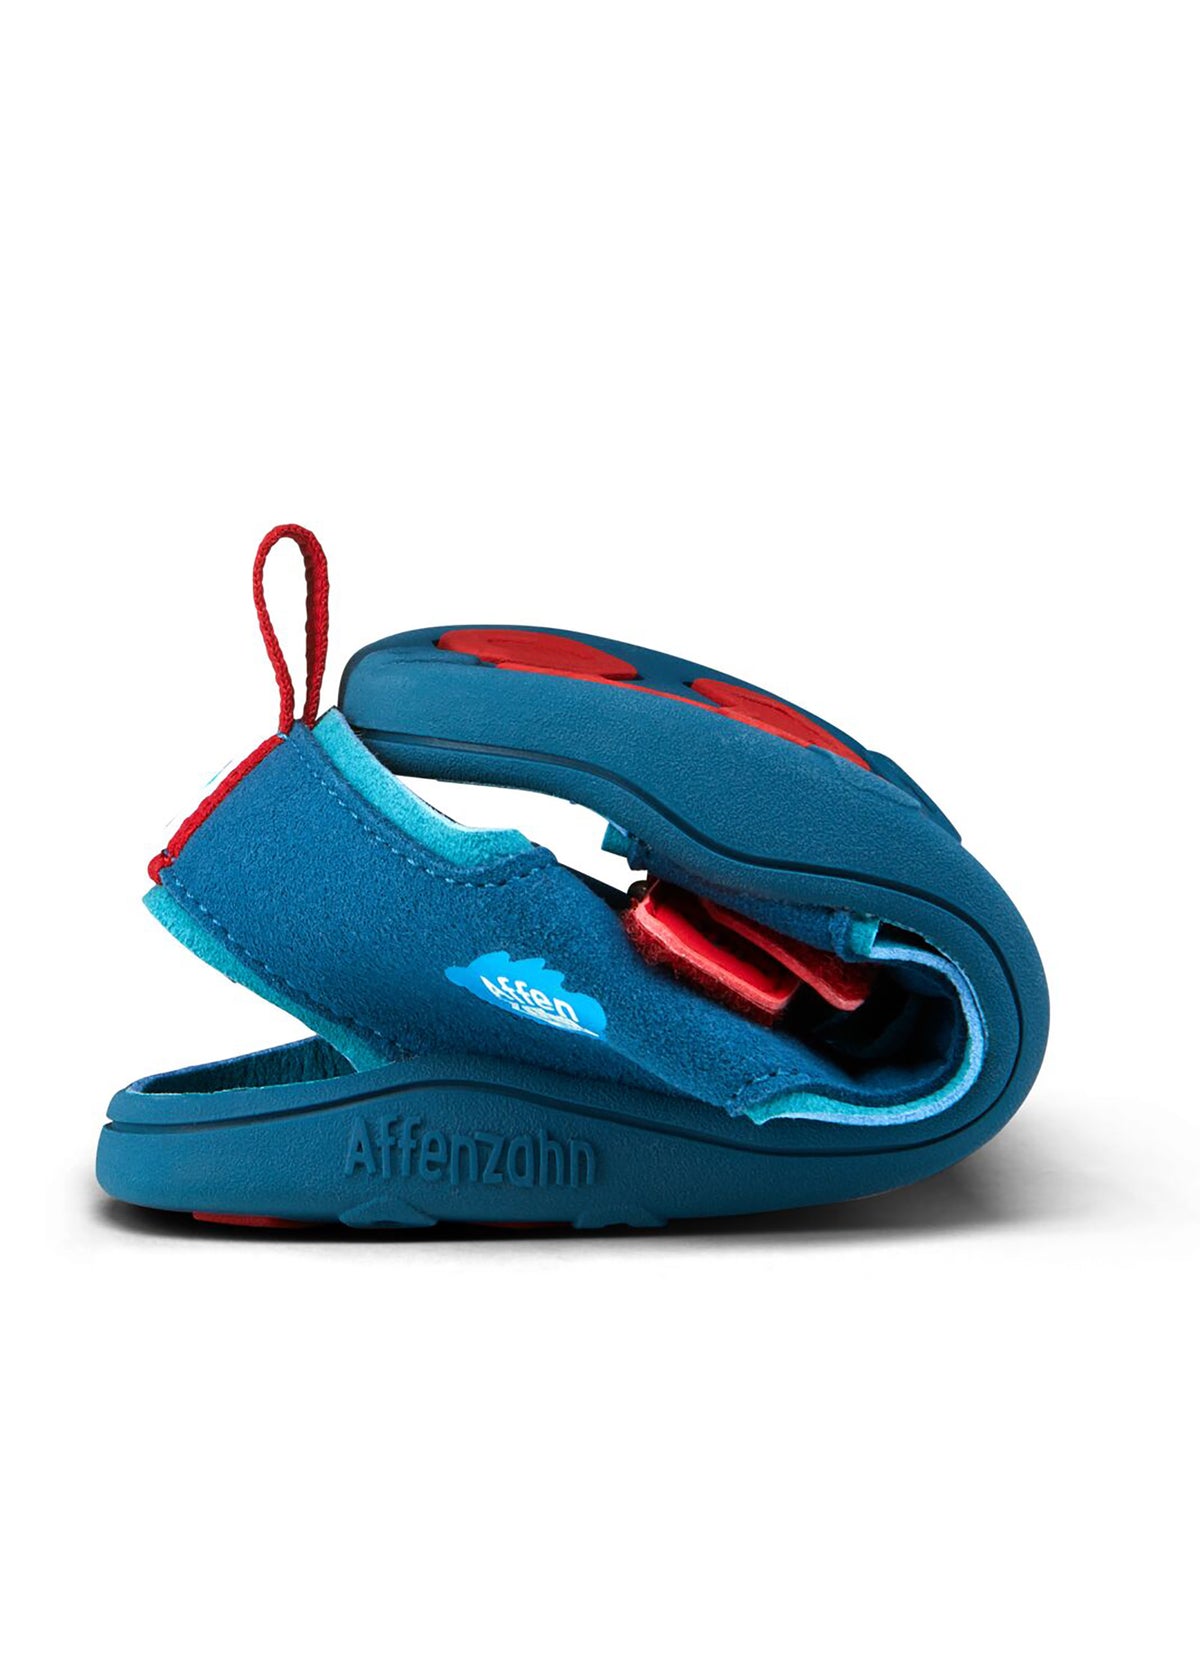 Lasten Shark-paljasjalkasandaalit - Sandal Microfibre Airy, sininen, punaiset tarrat, vegaaninen